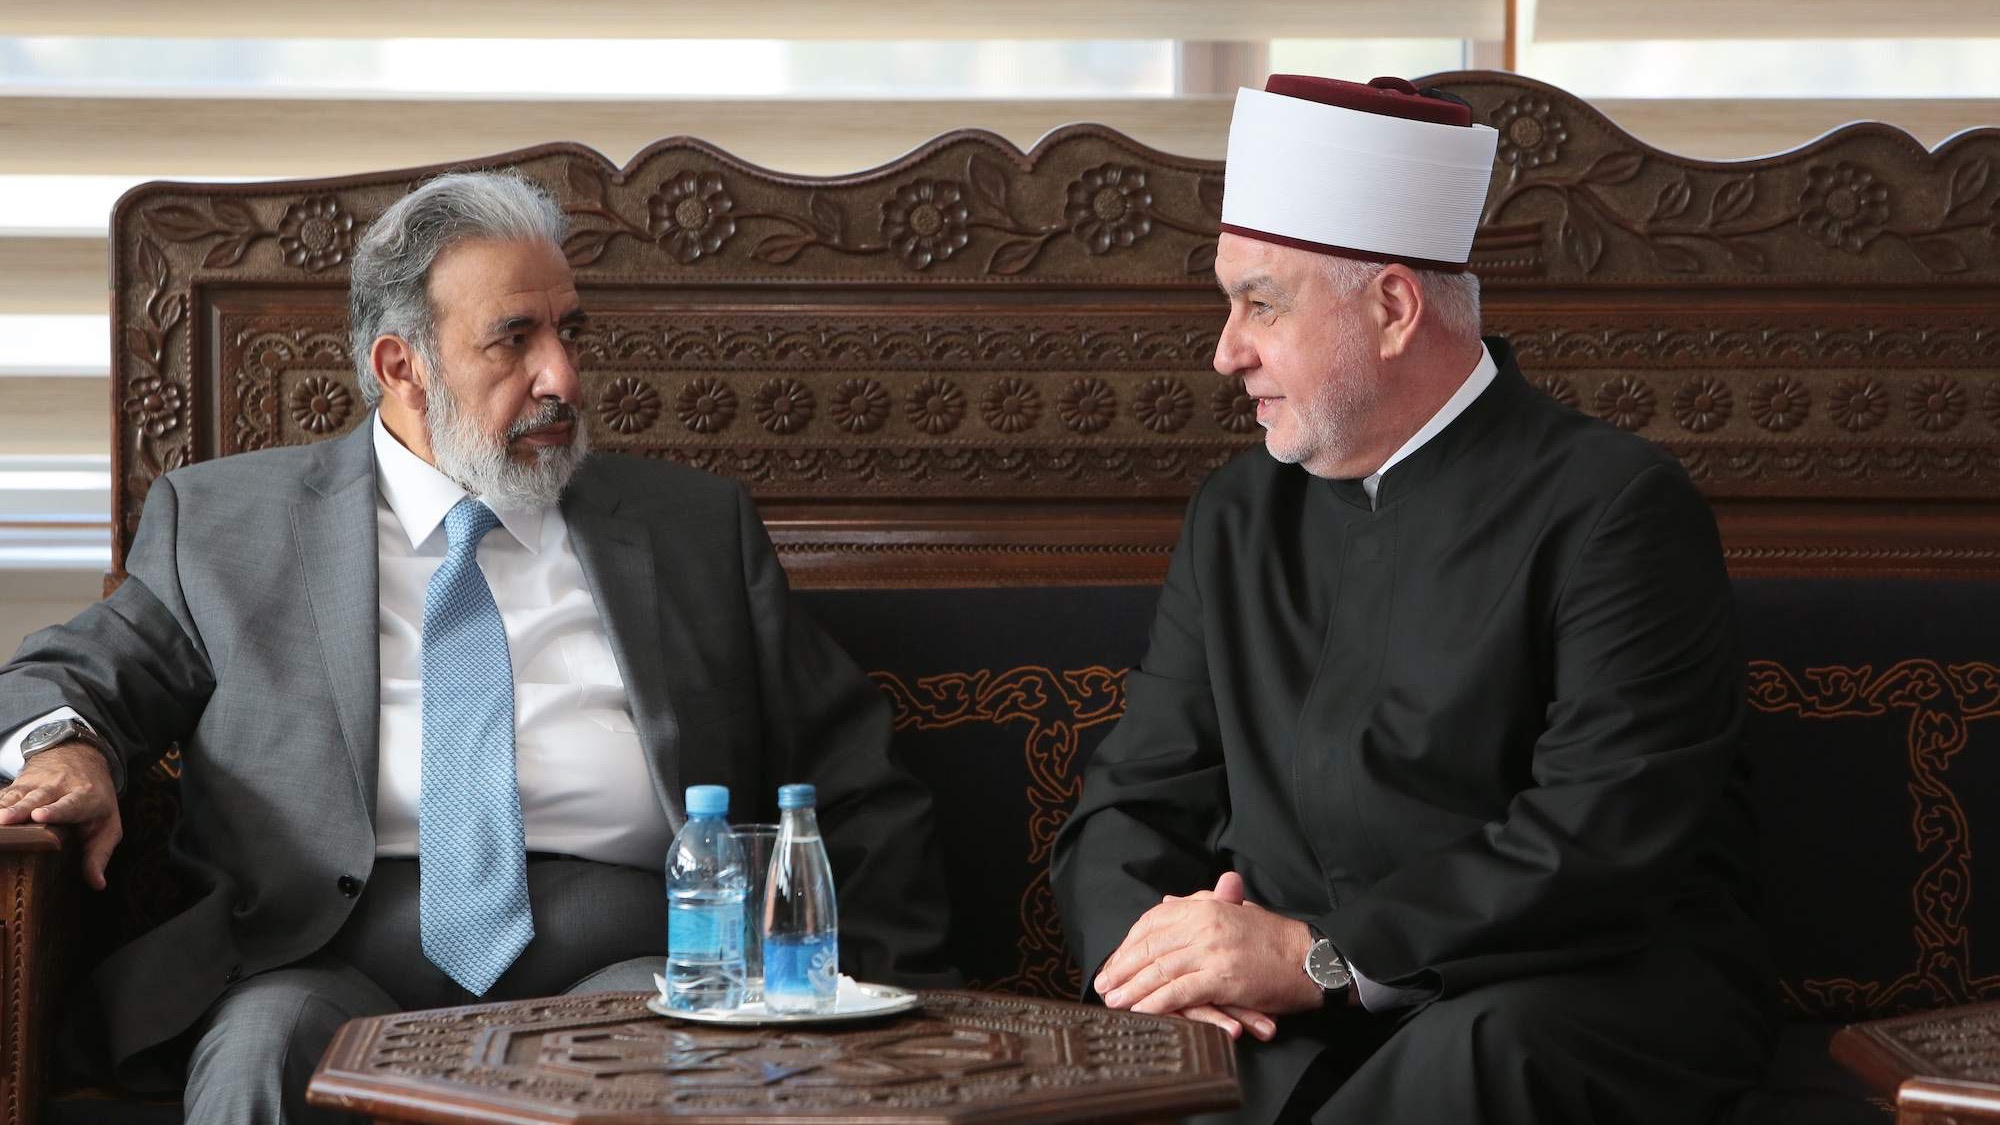 Ministar vakufa i islamskih pitanja Države Katar posjetio reisul-ulemu Husein-ef. Kavazovića (VIDEO)